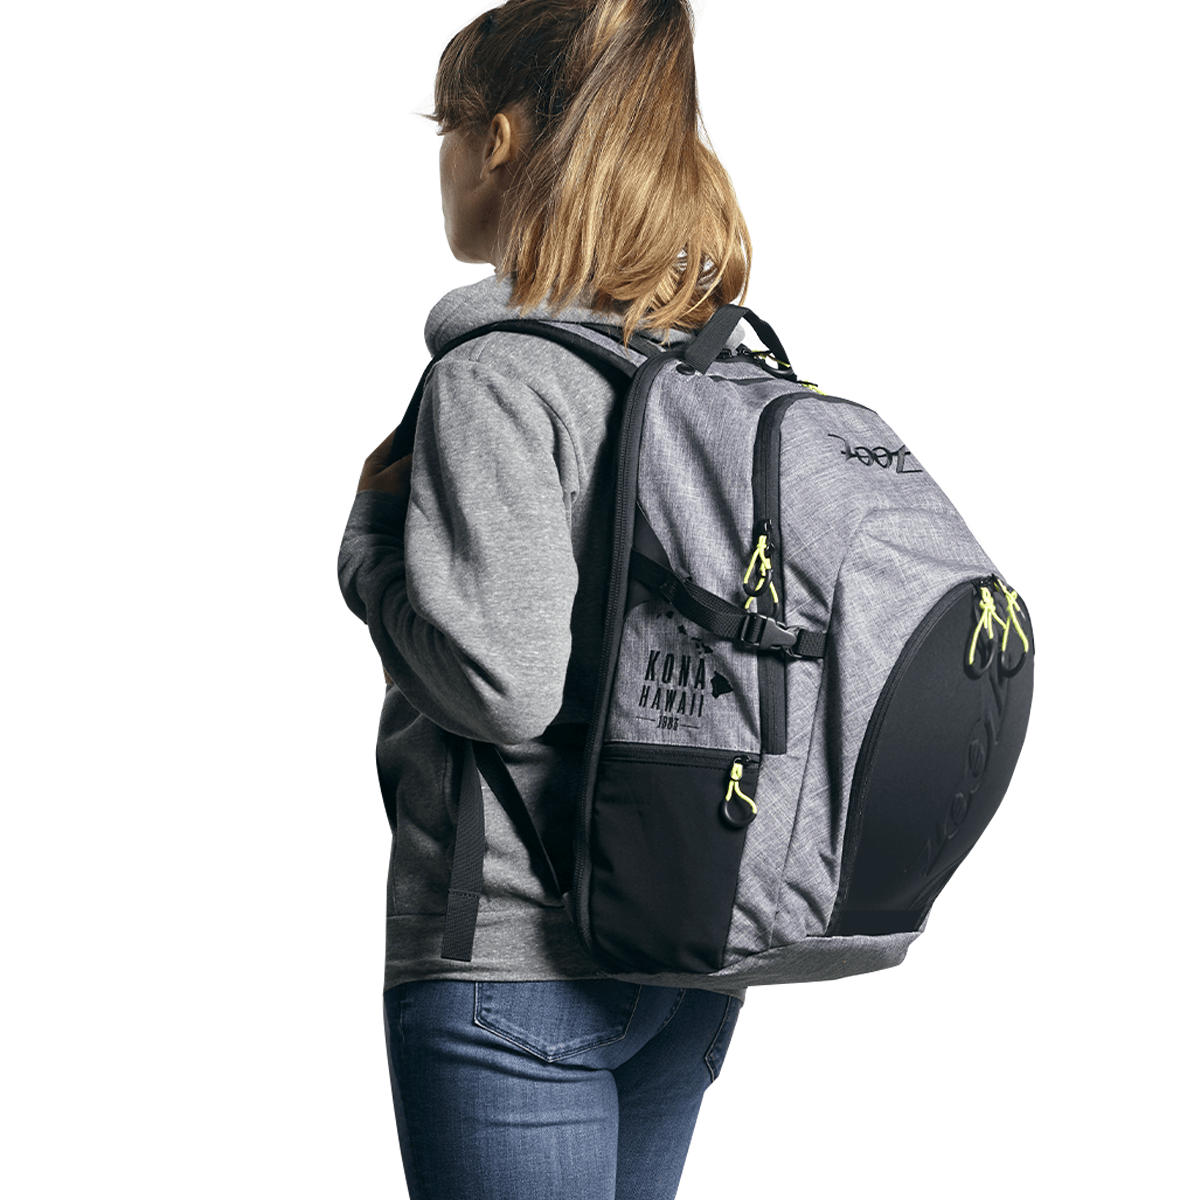 zoot ultra tri backpack canvas gray 15 Ba lô ba môn phối hợp Zoot Ultra Tri Backpack - Canvas Gray (25L) - YCB.vn